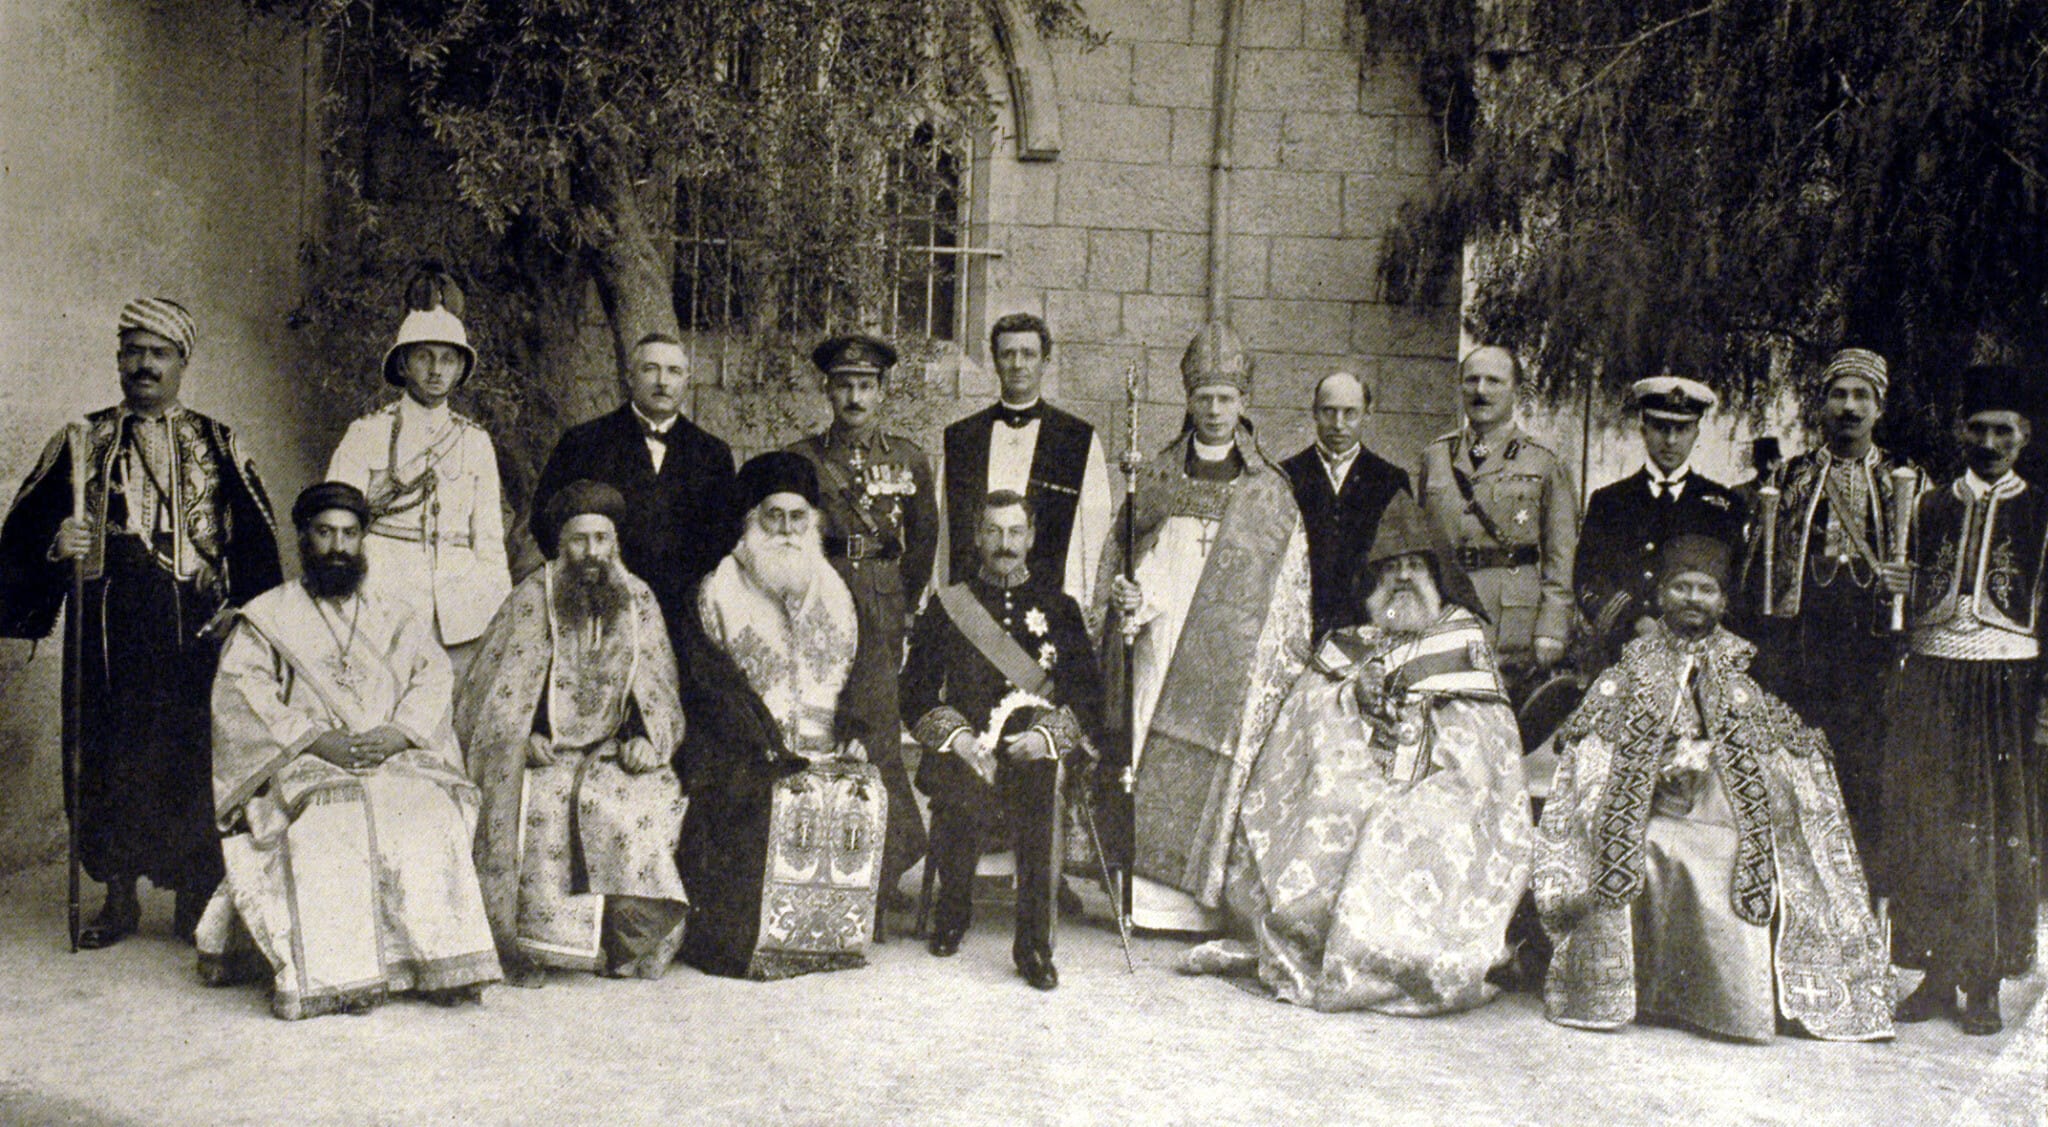 הרברט סמואל (יושב במרכז) עם מנהיגי כנסיות בירושלים ופקידים בריטים, 1922 (צילום: רשות הציבור)